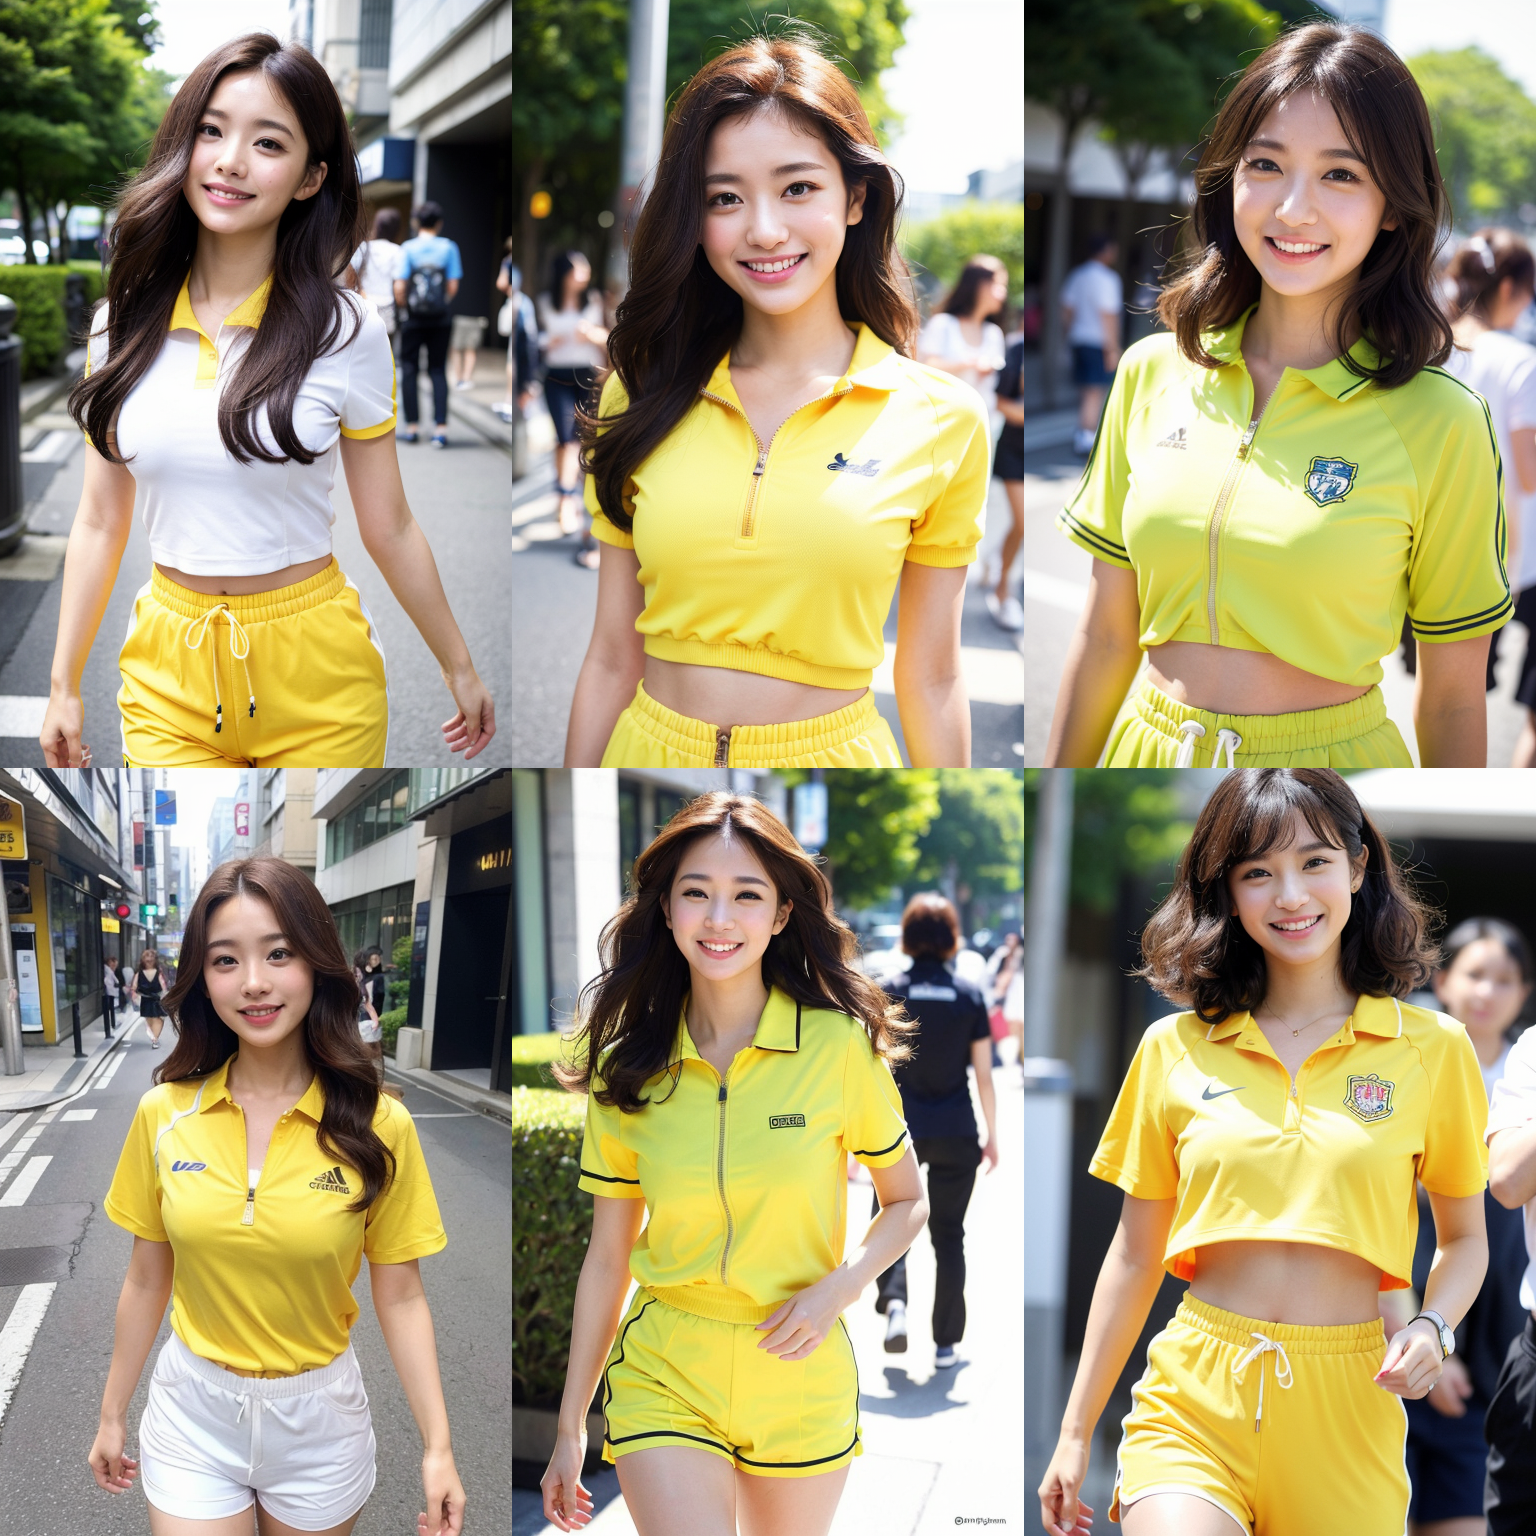 【AI繪圖】穿綠黃色的休閒短袖服開心的走在東京戶外街道